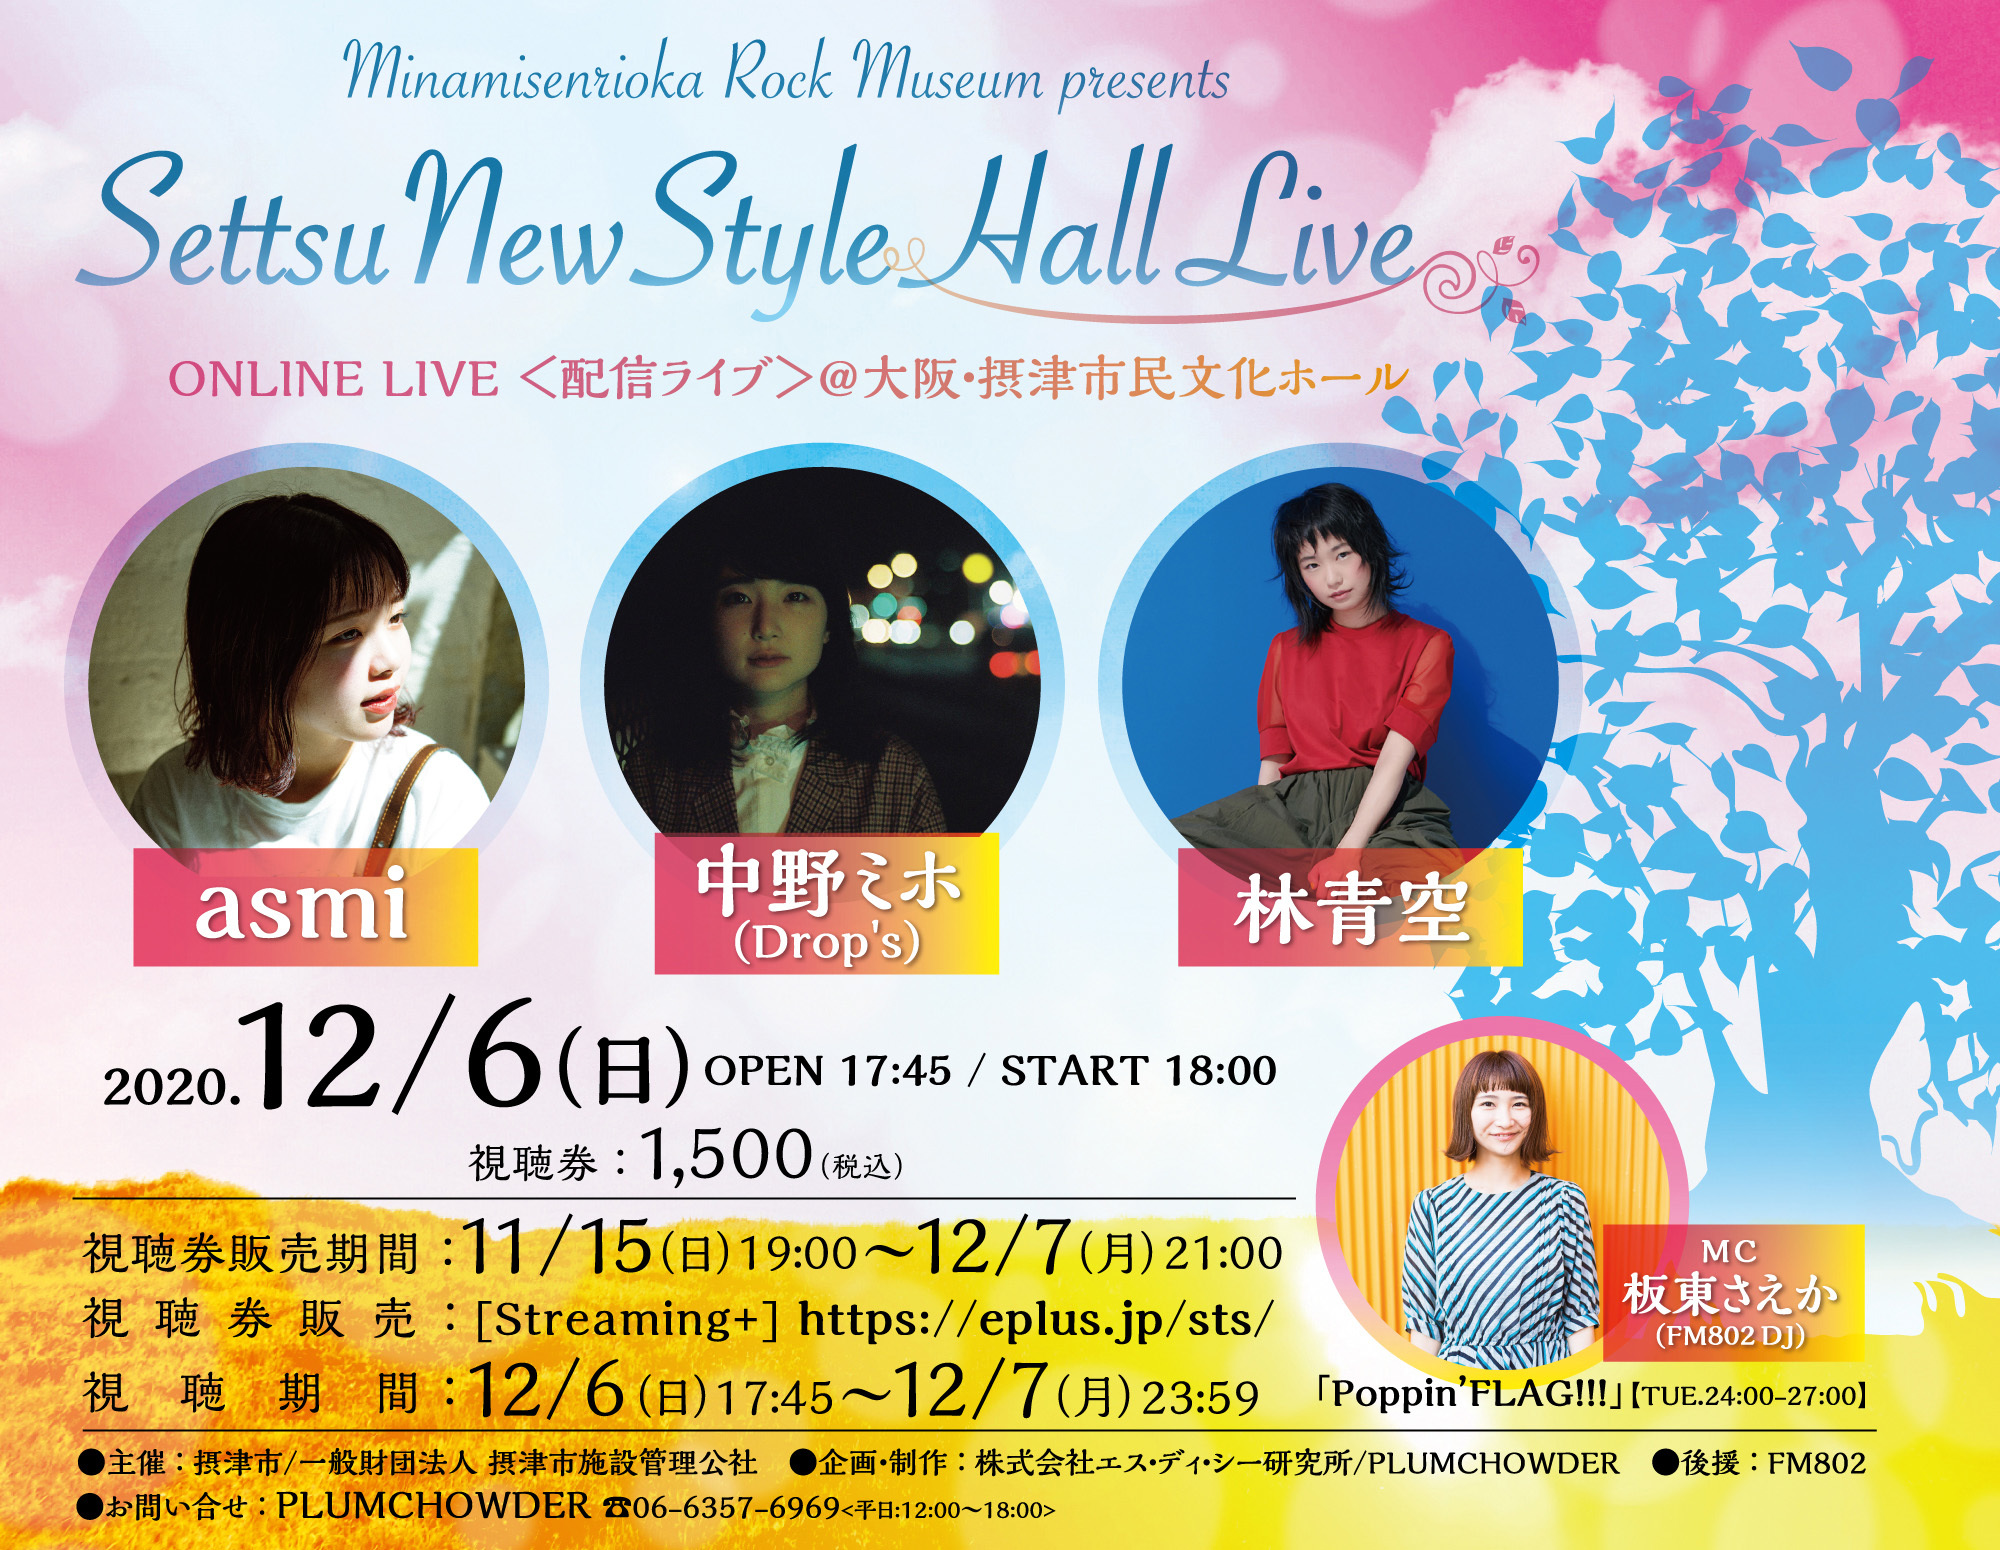 南千里丘 Rock Museum presents Settsu New Style Hall Live  